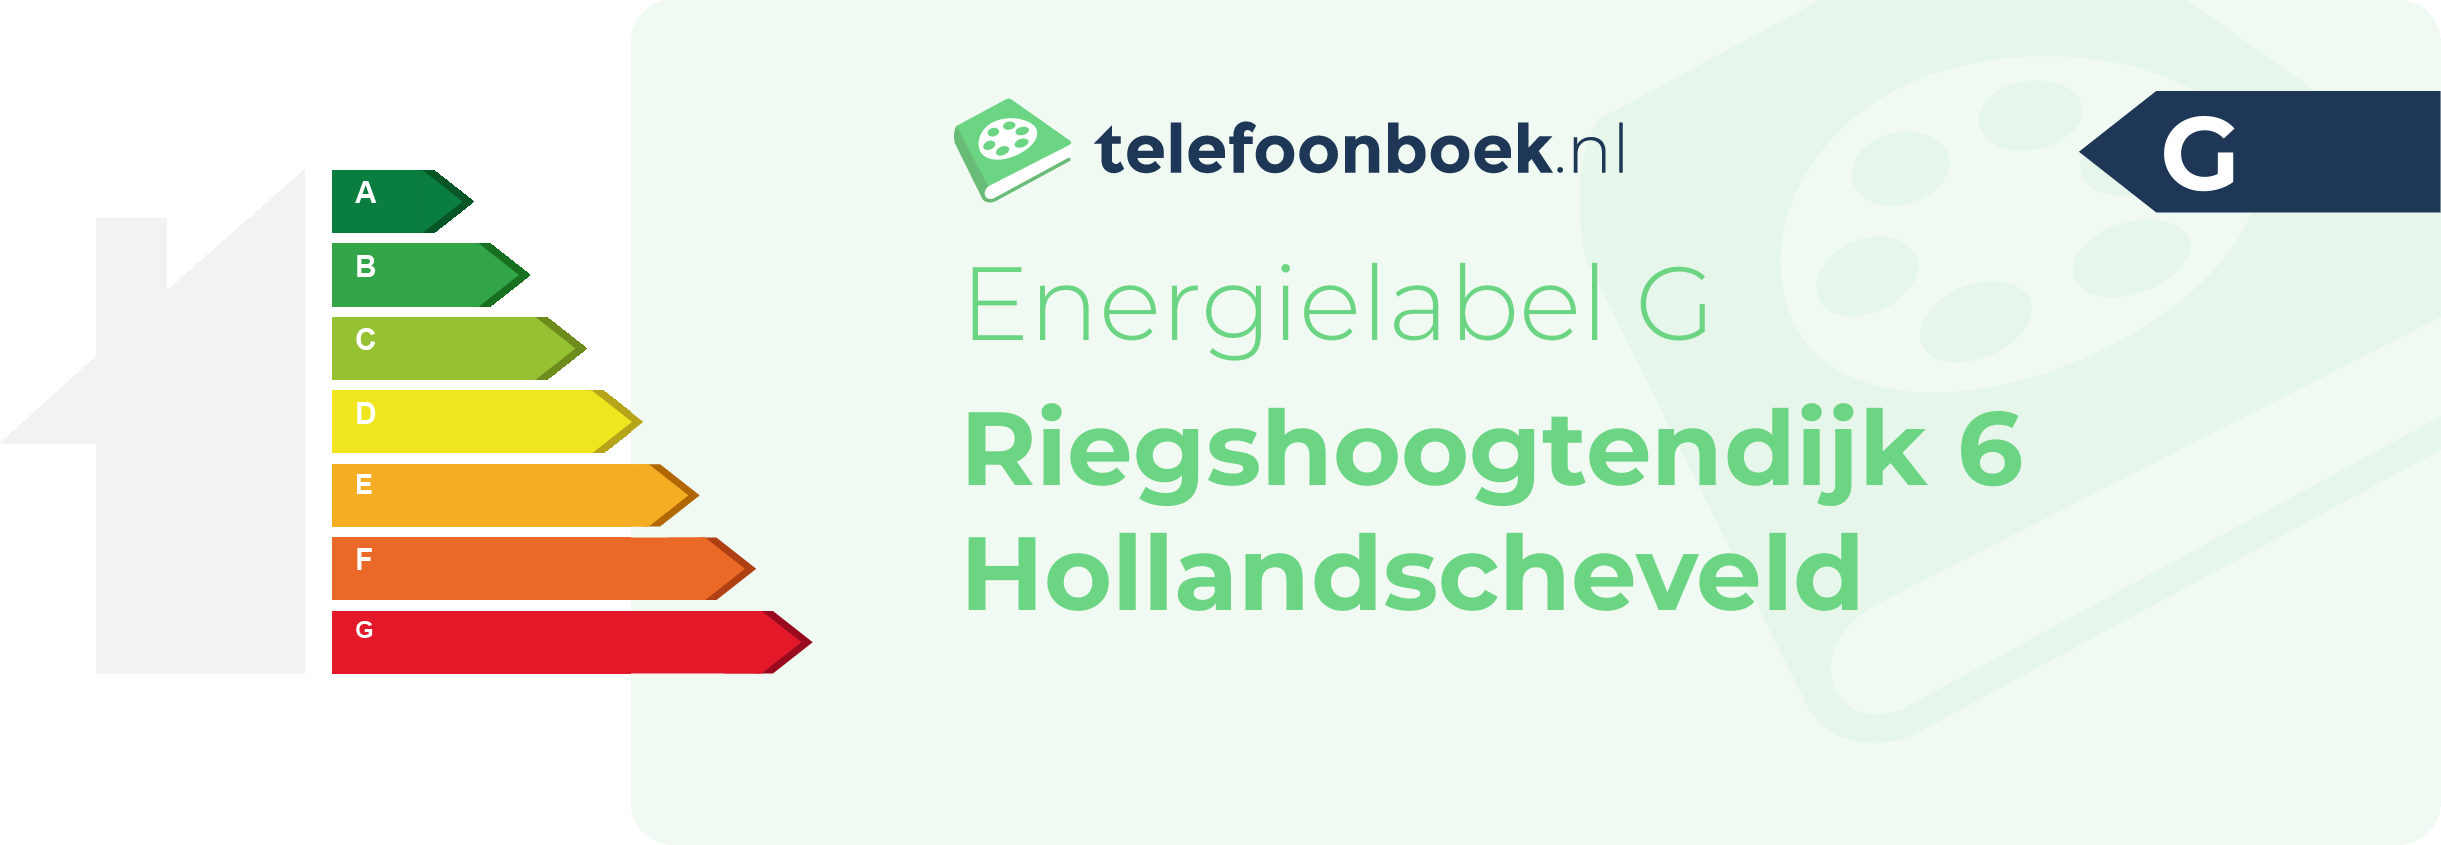 Energielabel Riegshoogtendijk 6 Hollandscheveld